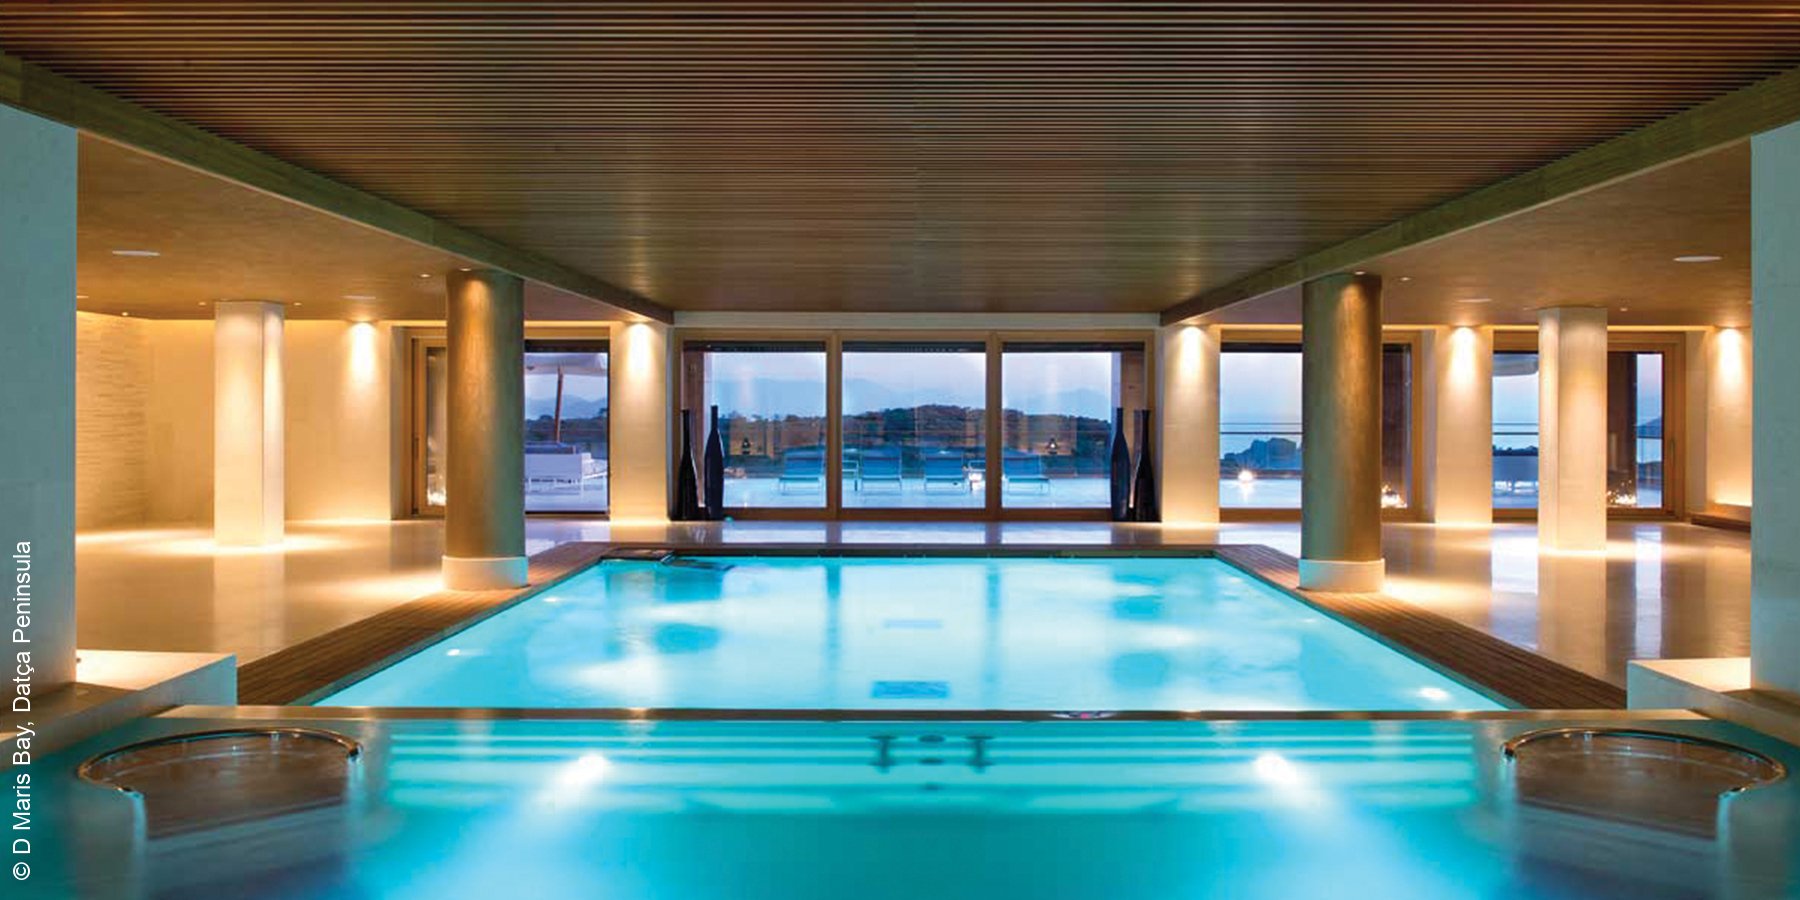 D Maris Bay | Indoor Pool | Türkei | luxuszeit.com